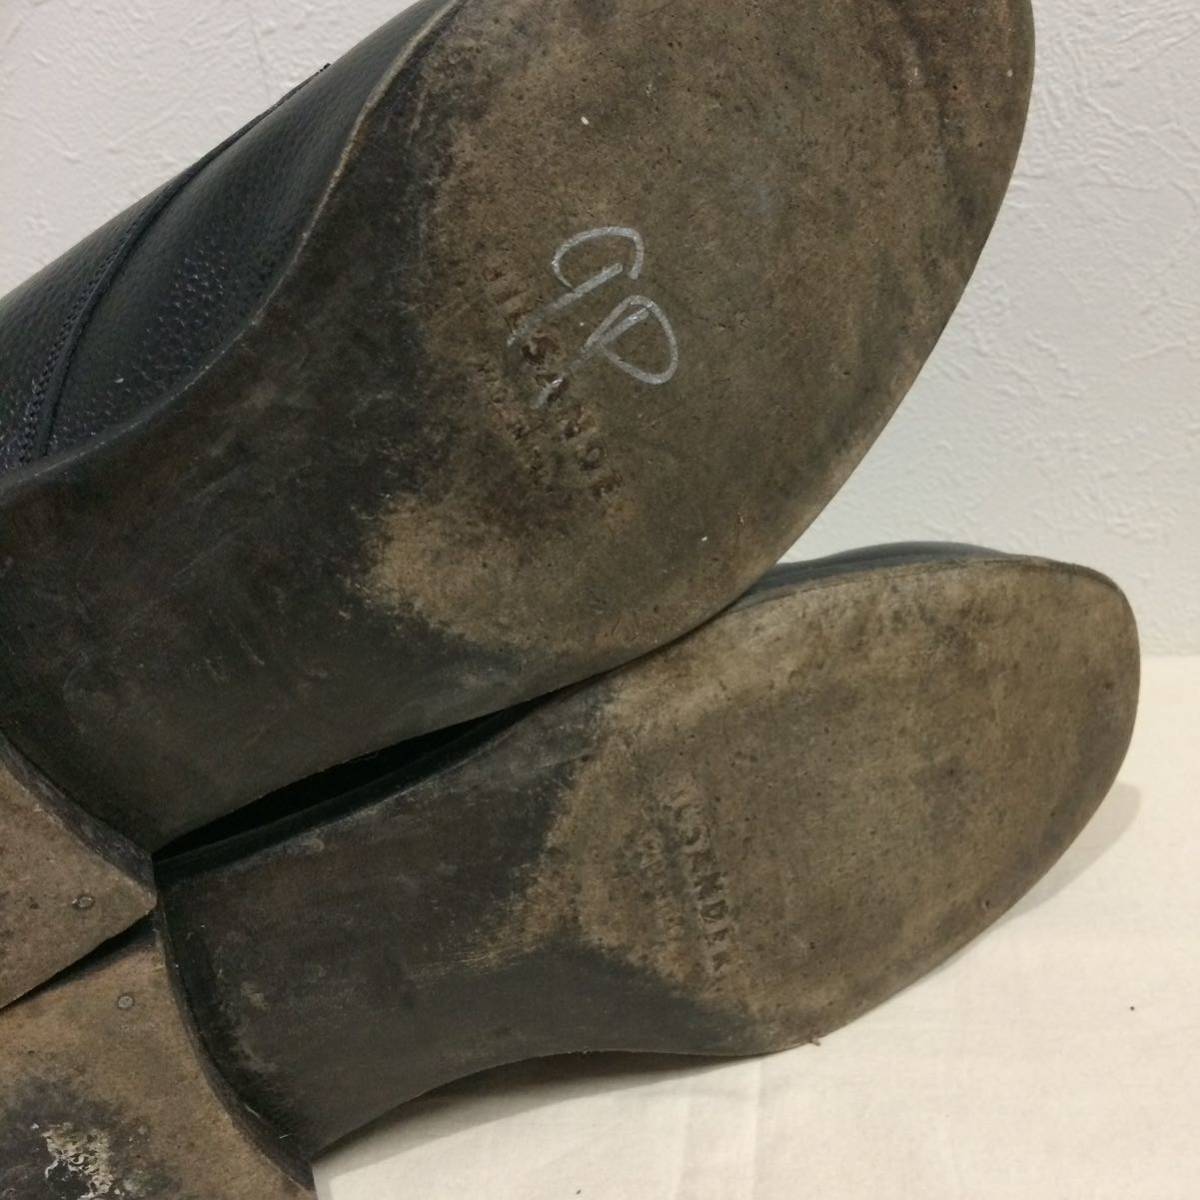  Vintage Jil Sander leather shoes black wrinkle leather Italy made 231222